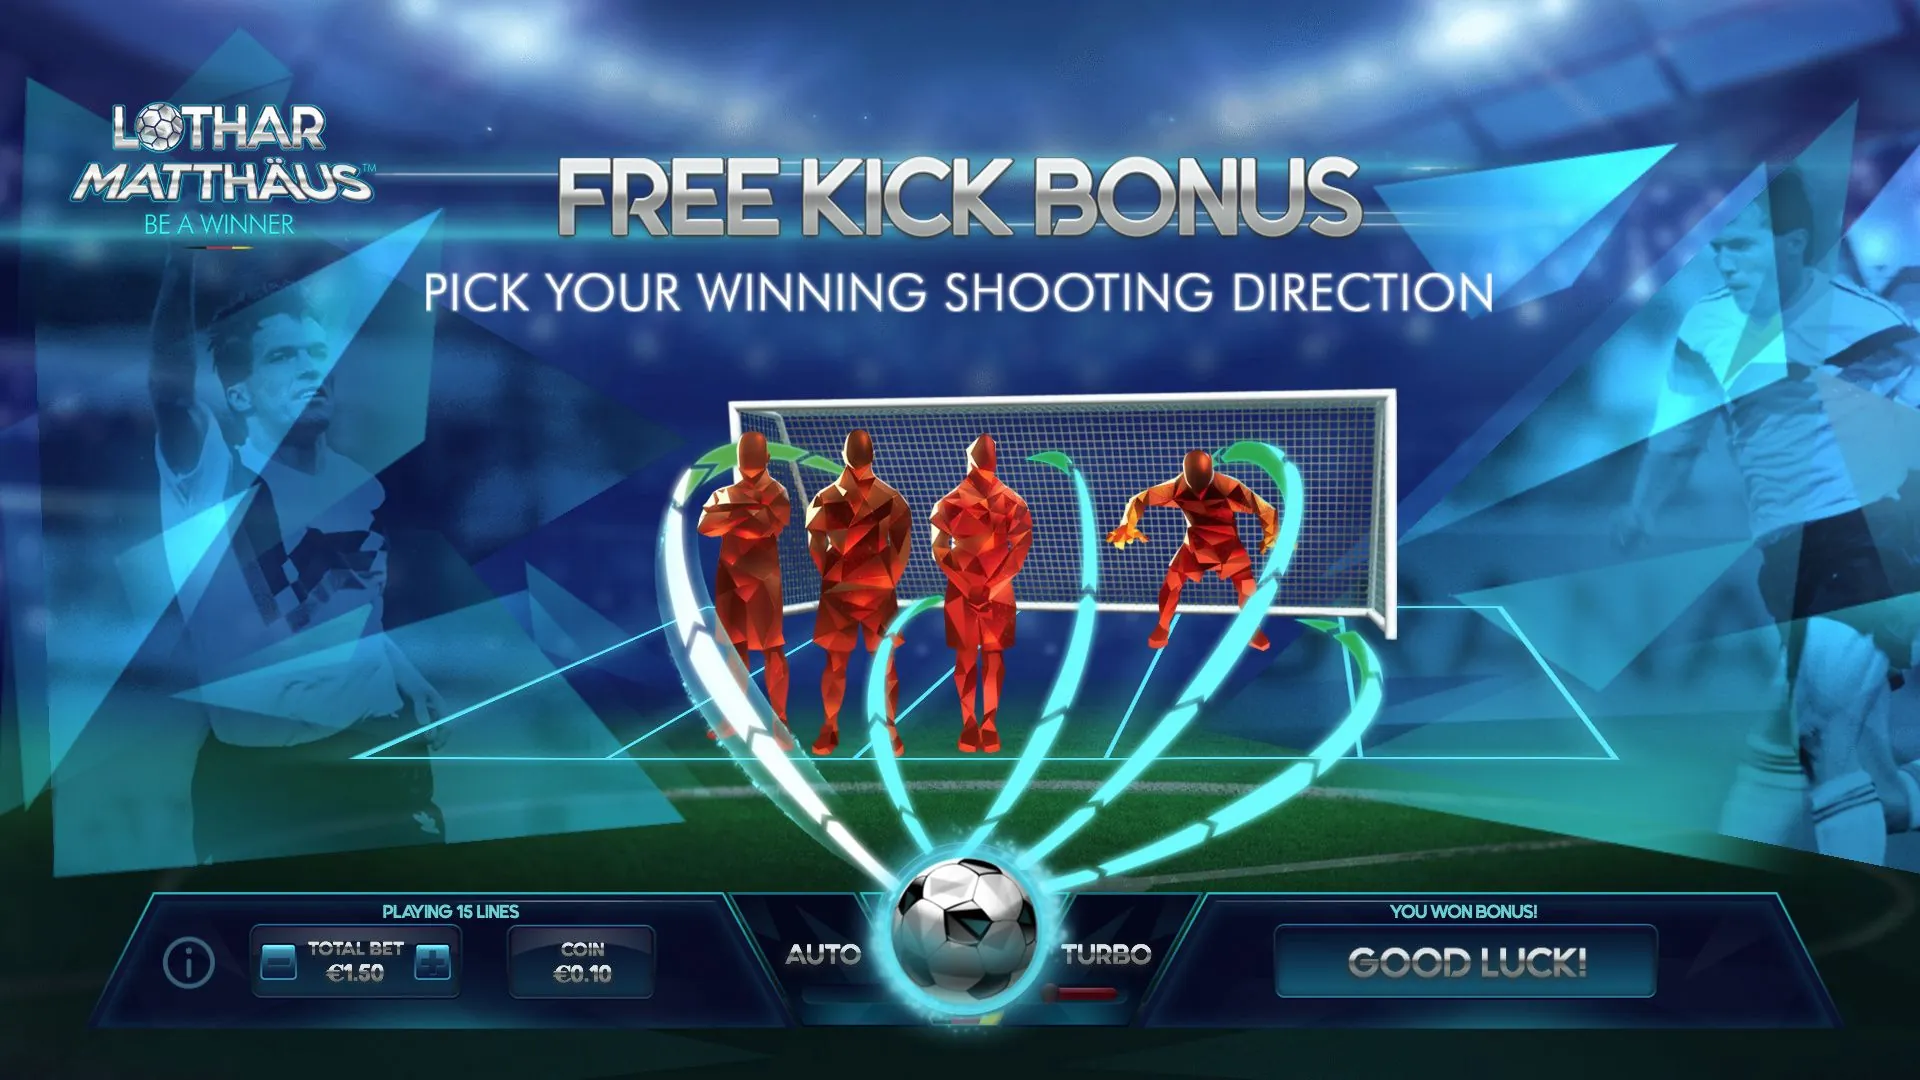 Free Kick Bonus